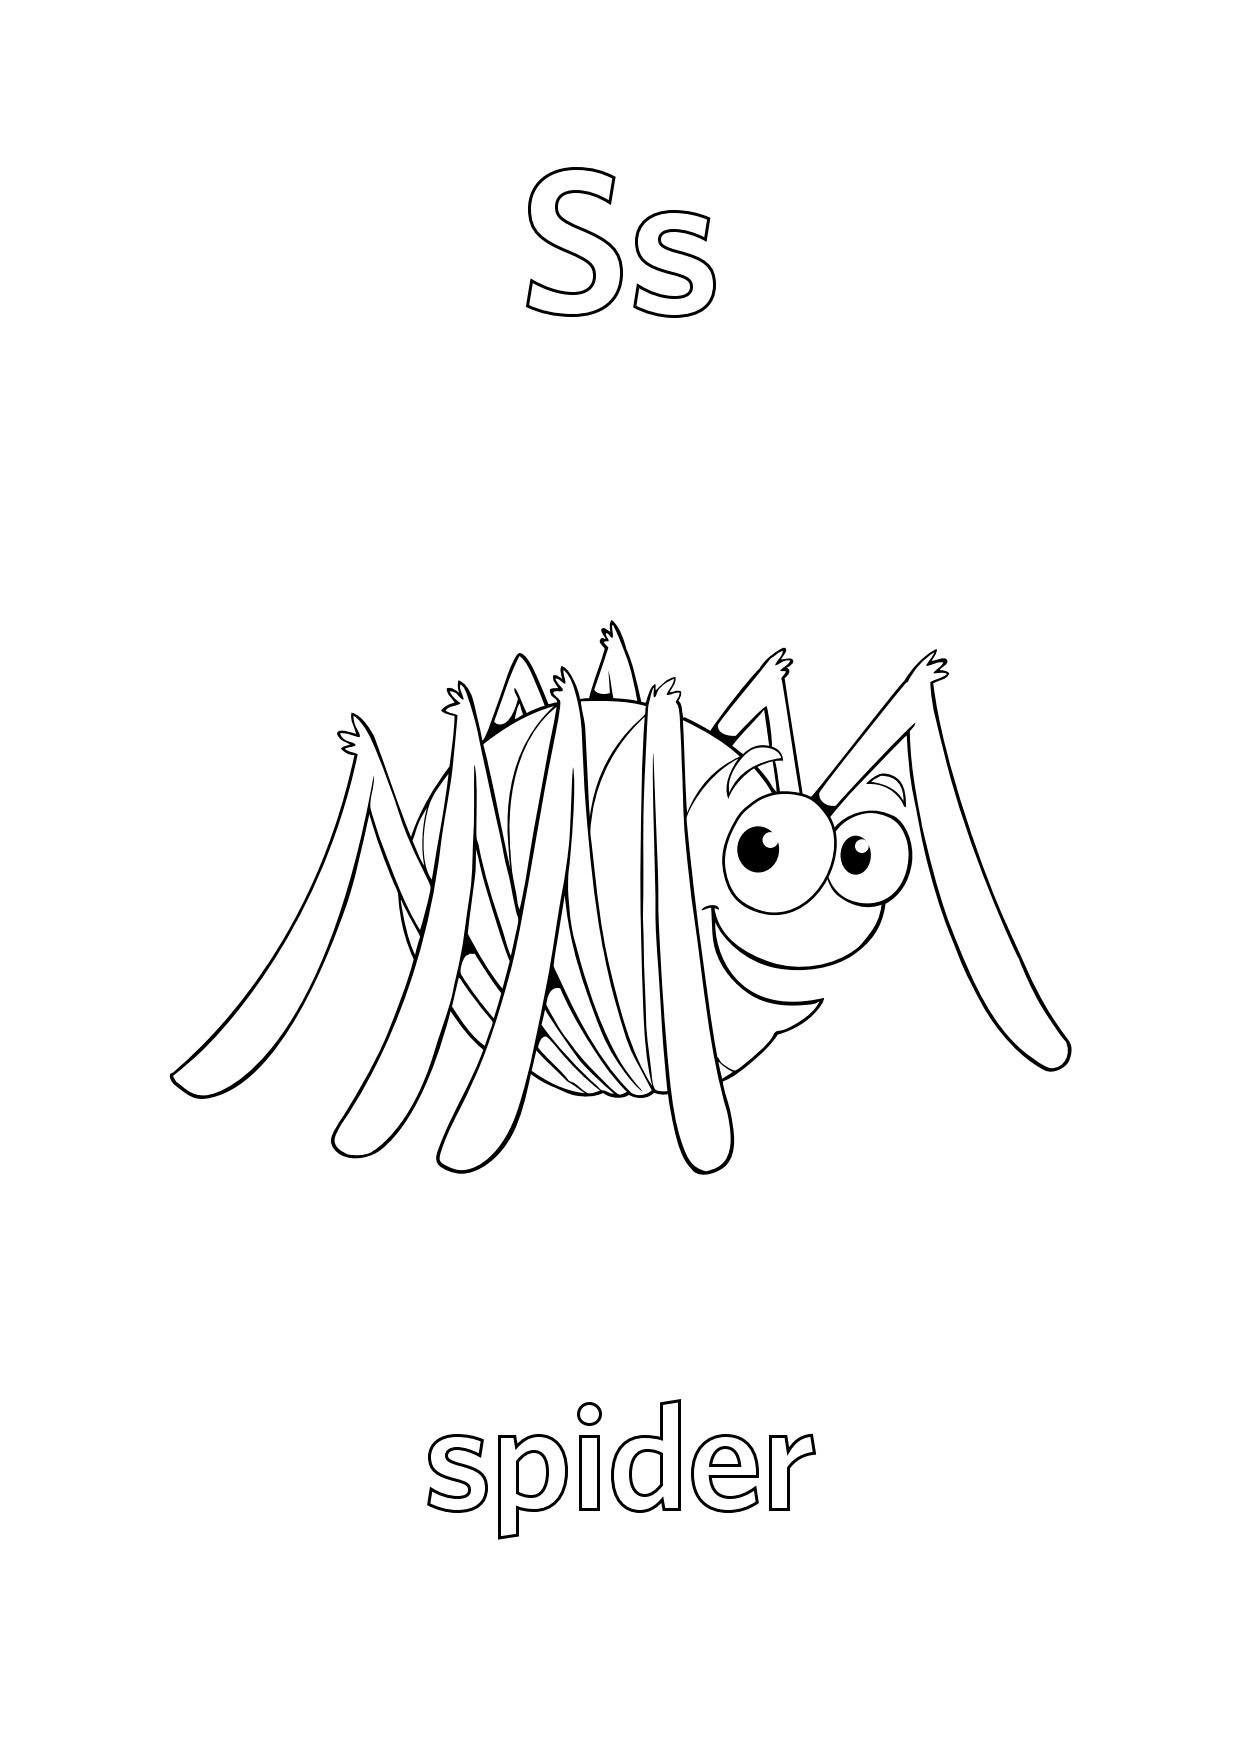 Tô màu hình ảnh con nhện với từ